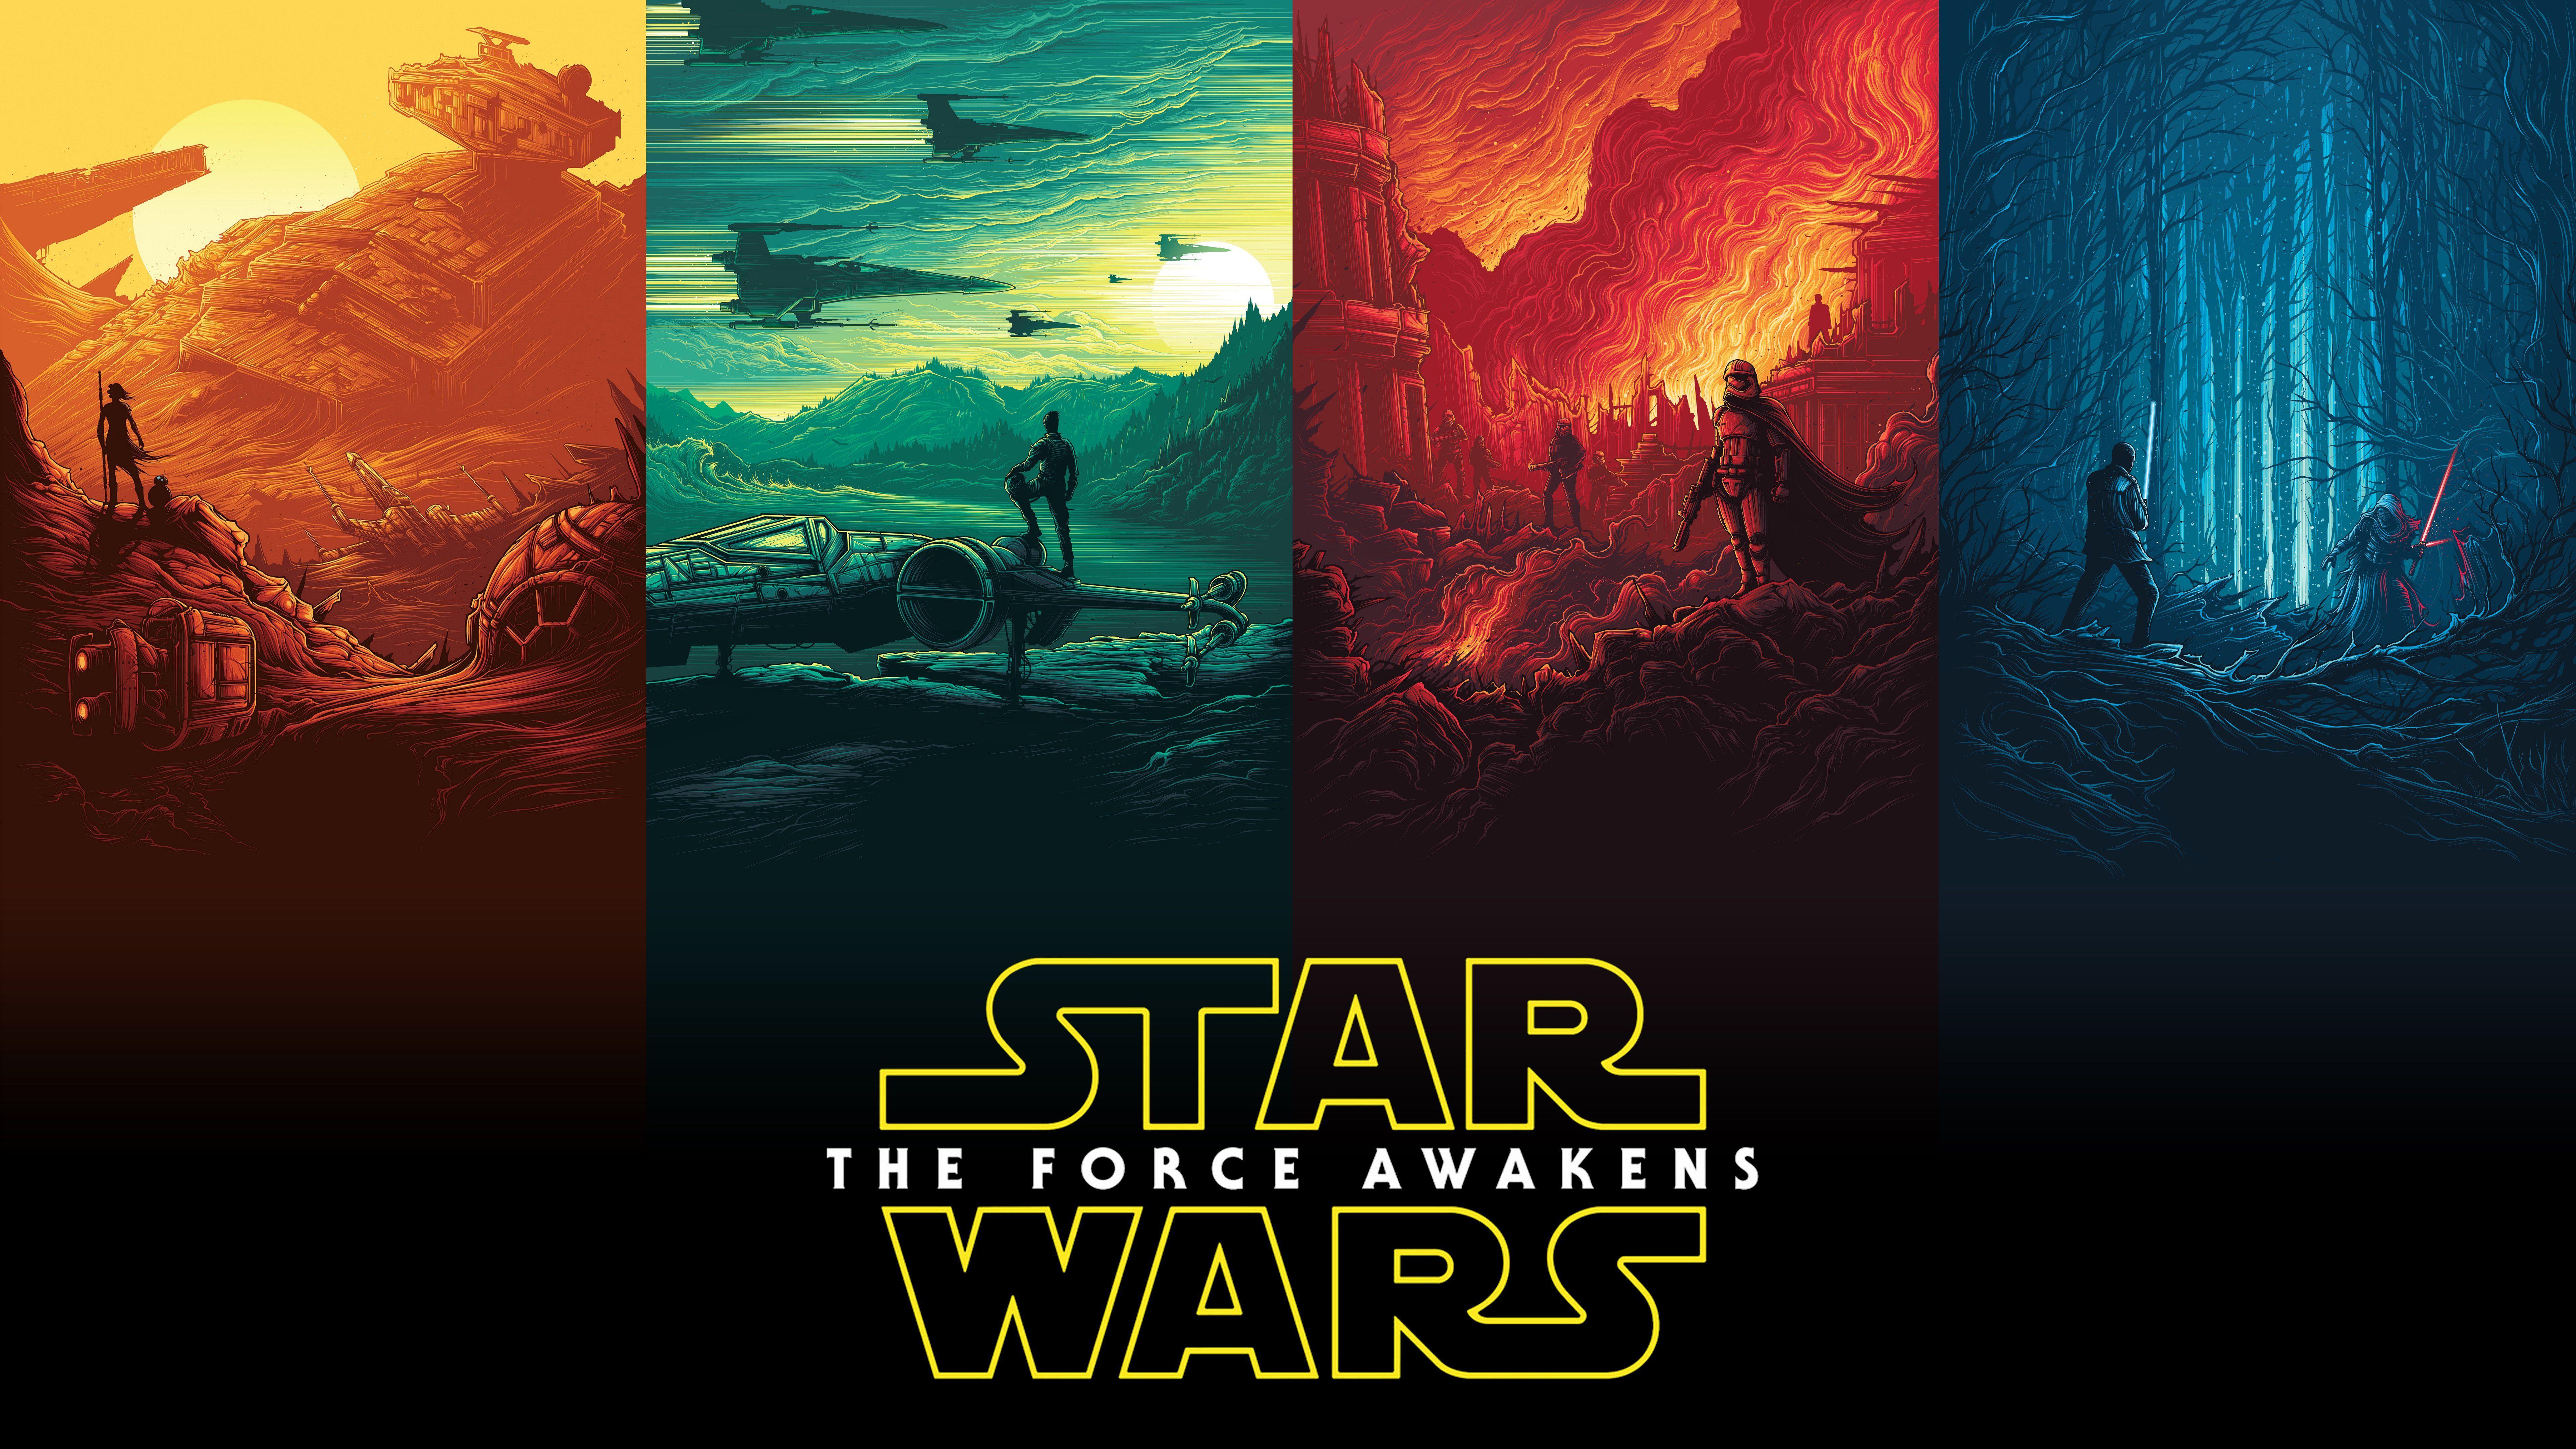 Star Wars Background